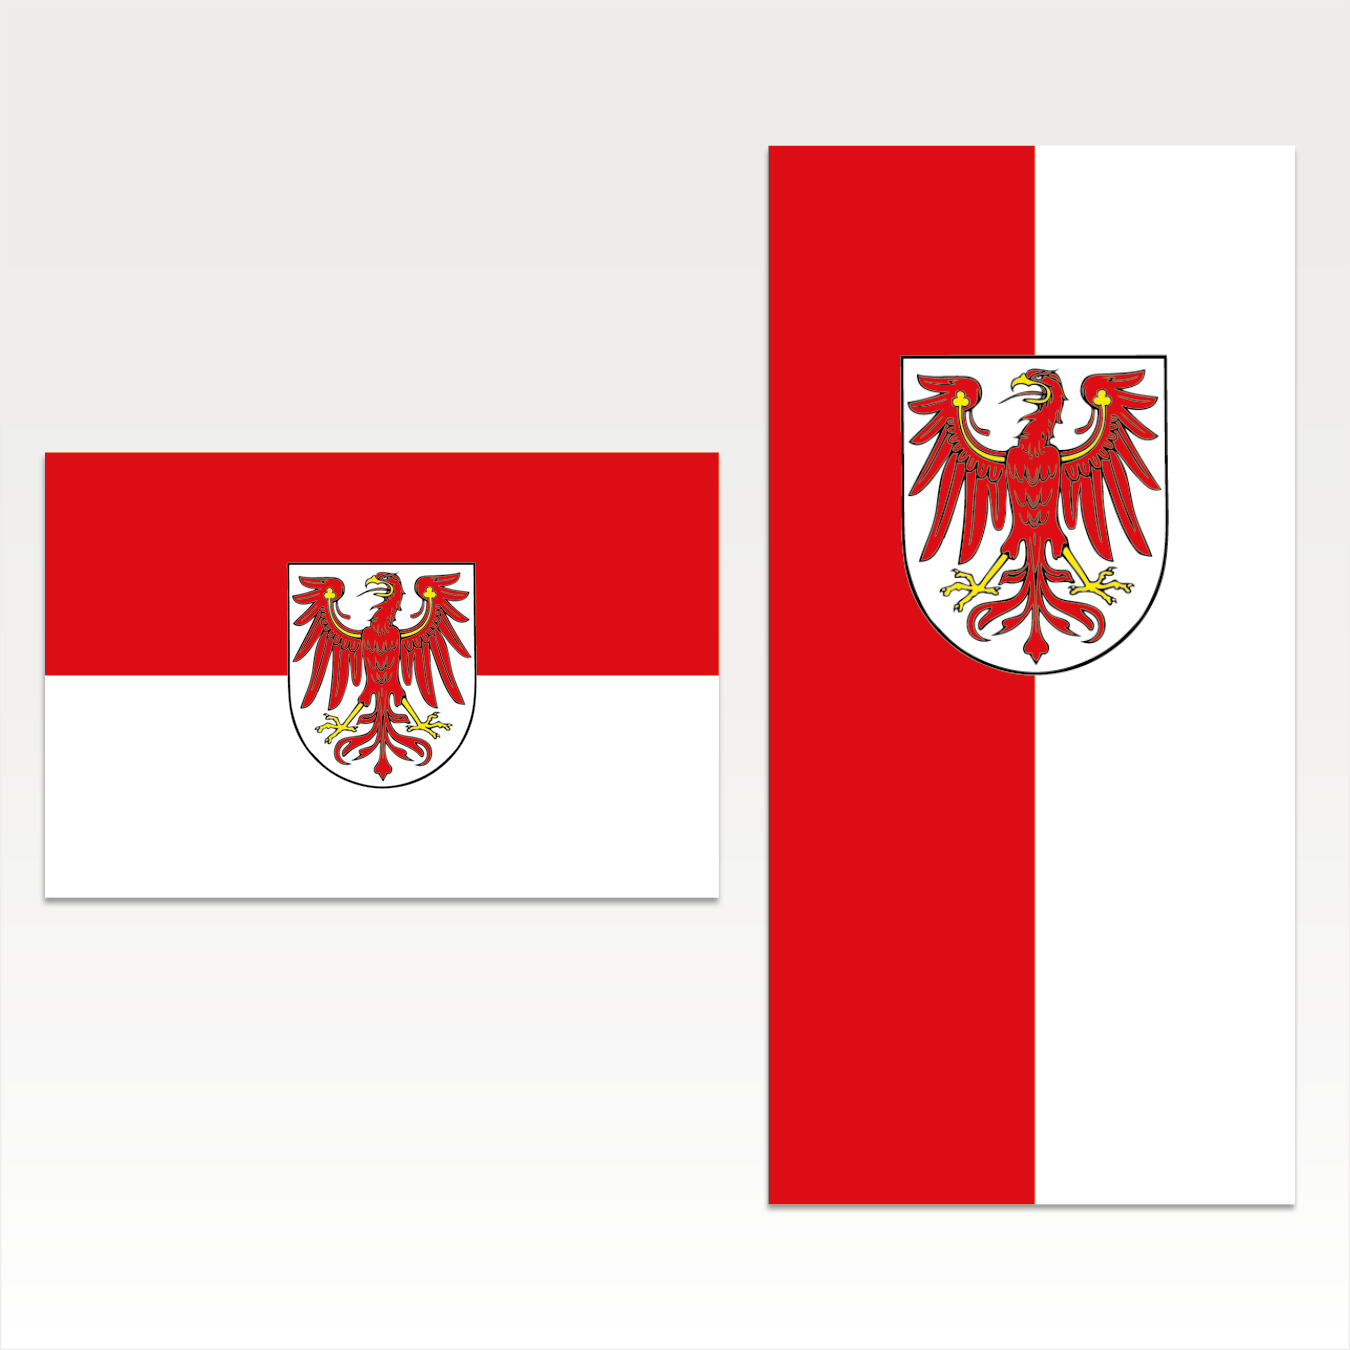 Brandenburg (Bürgerflagge mit Wappen)